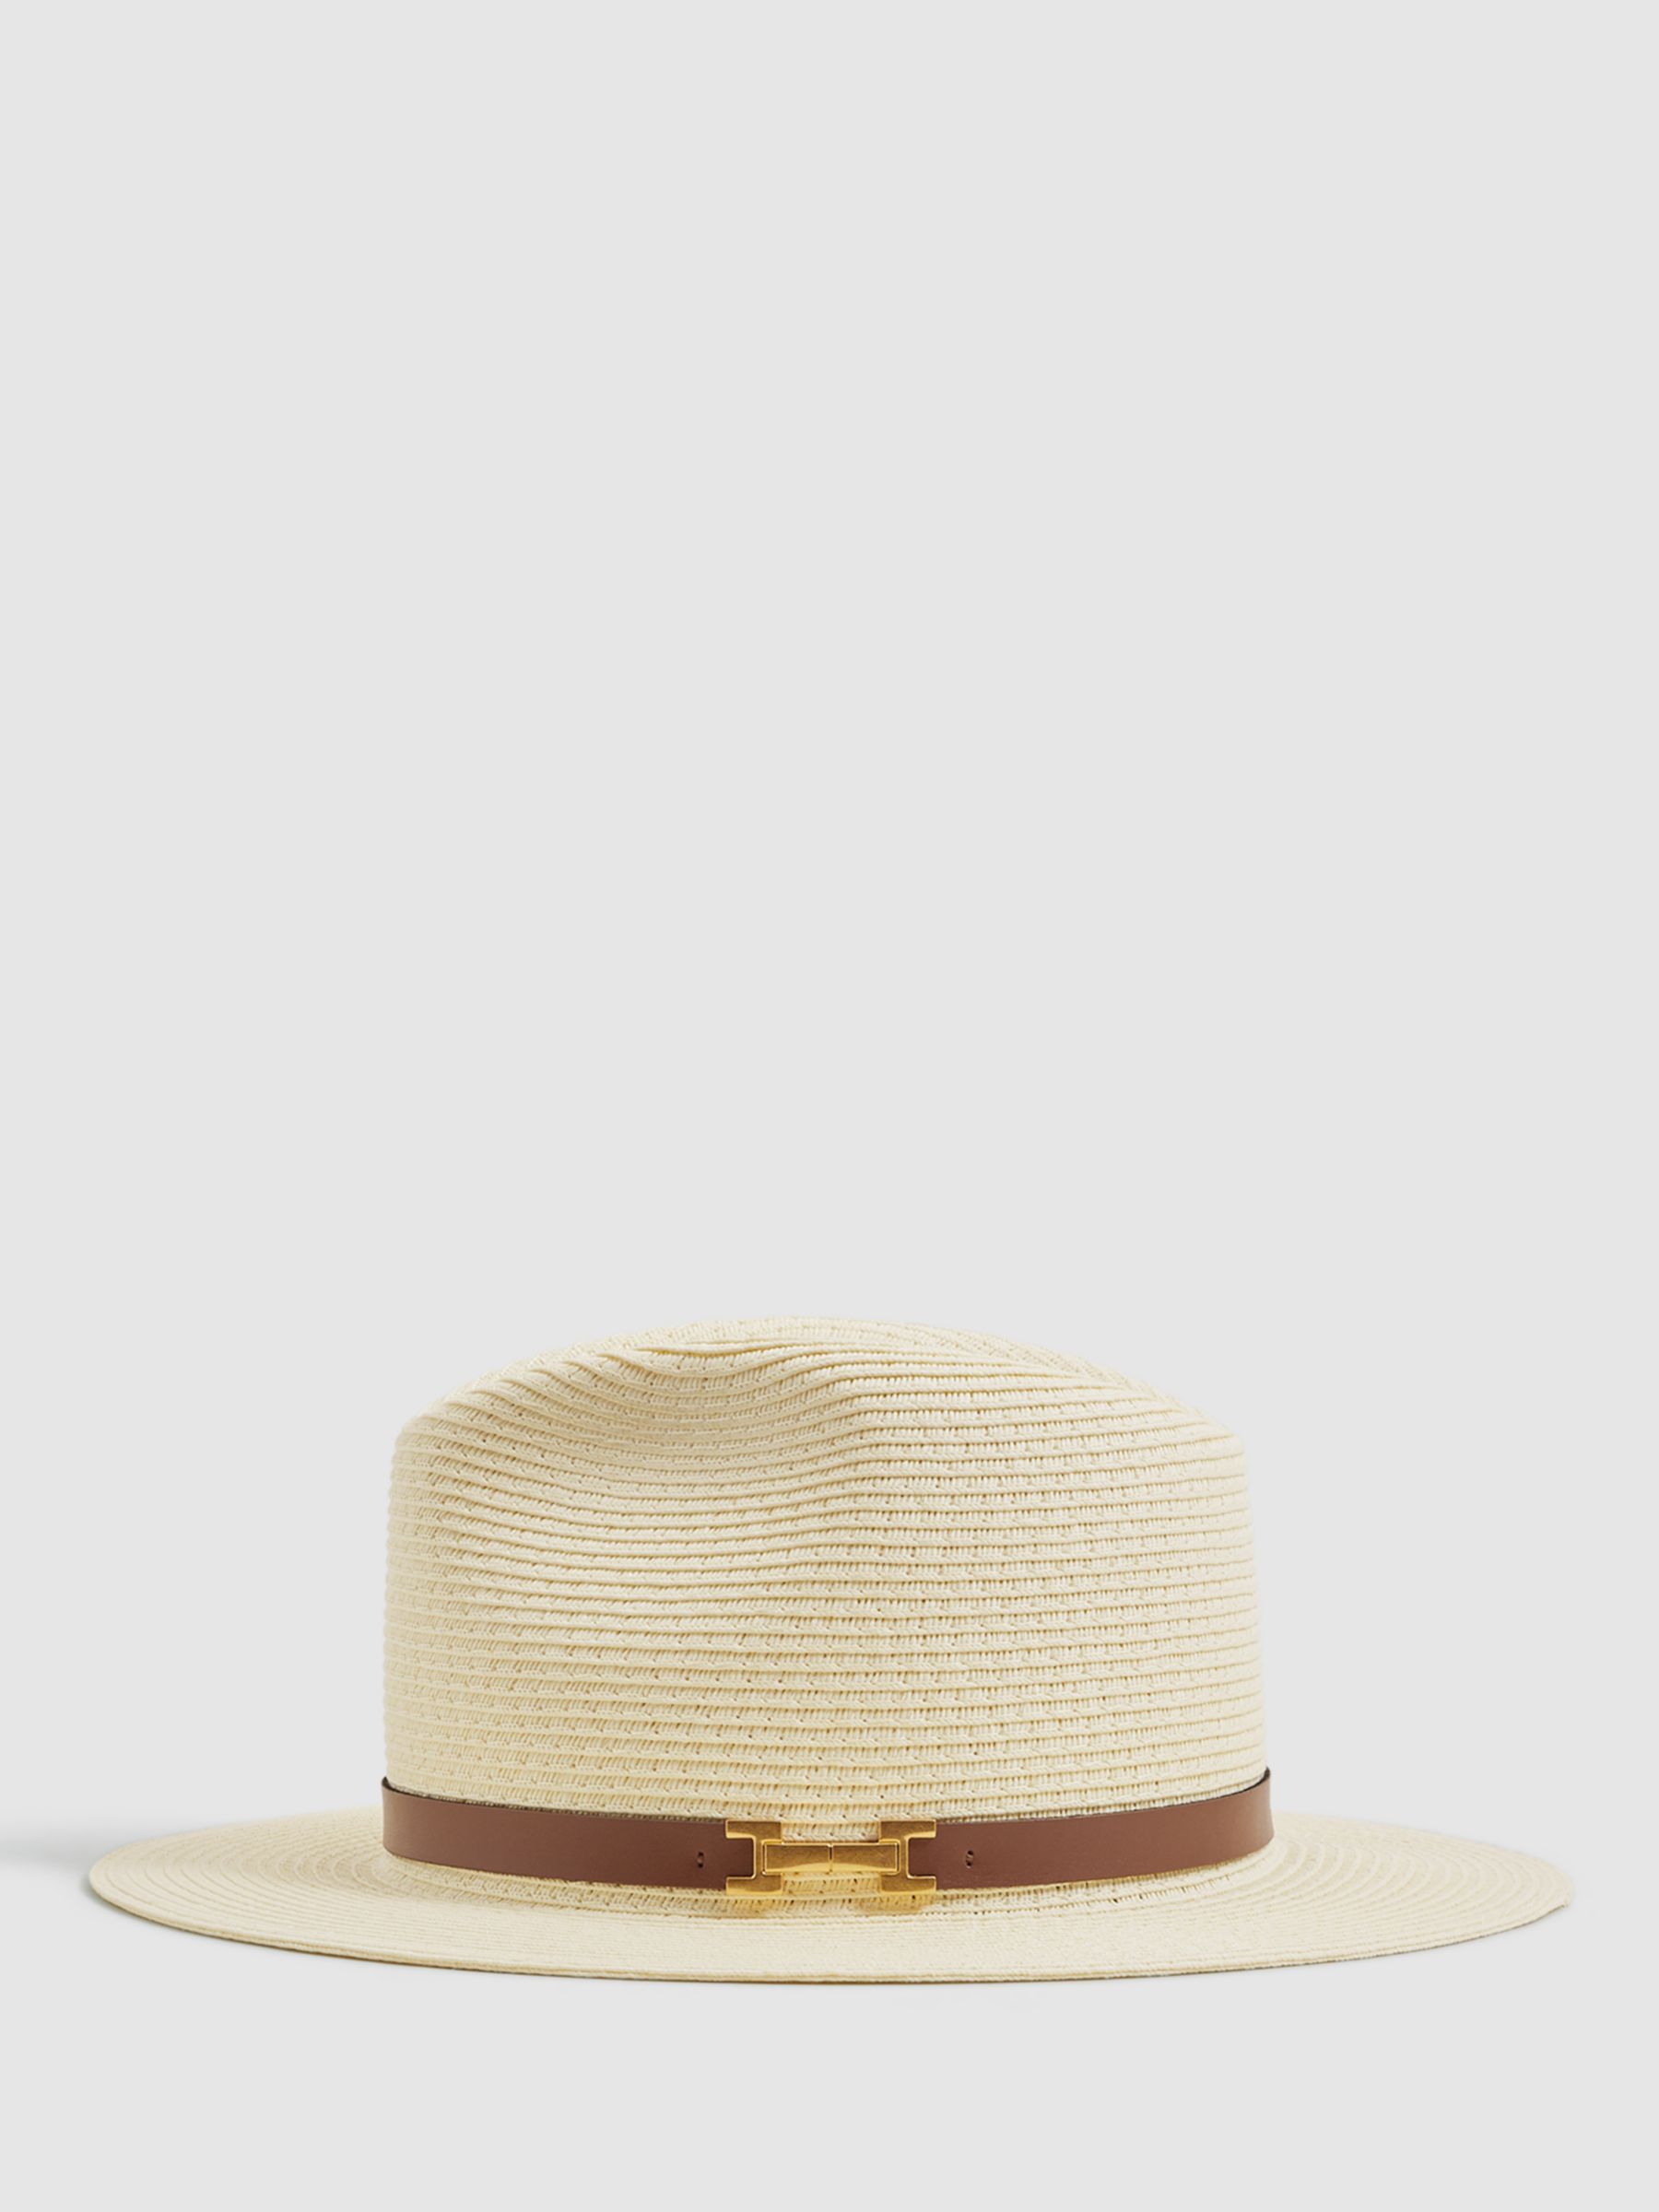 Reiss Gigi Paper Straw Sun Hat, Natural, M-L